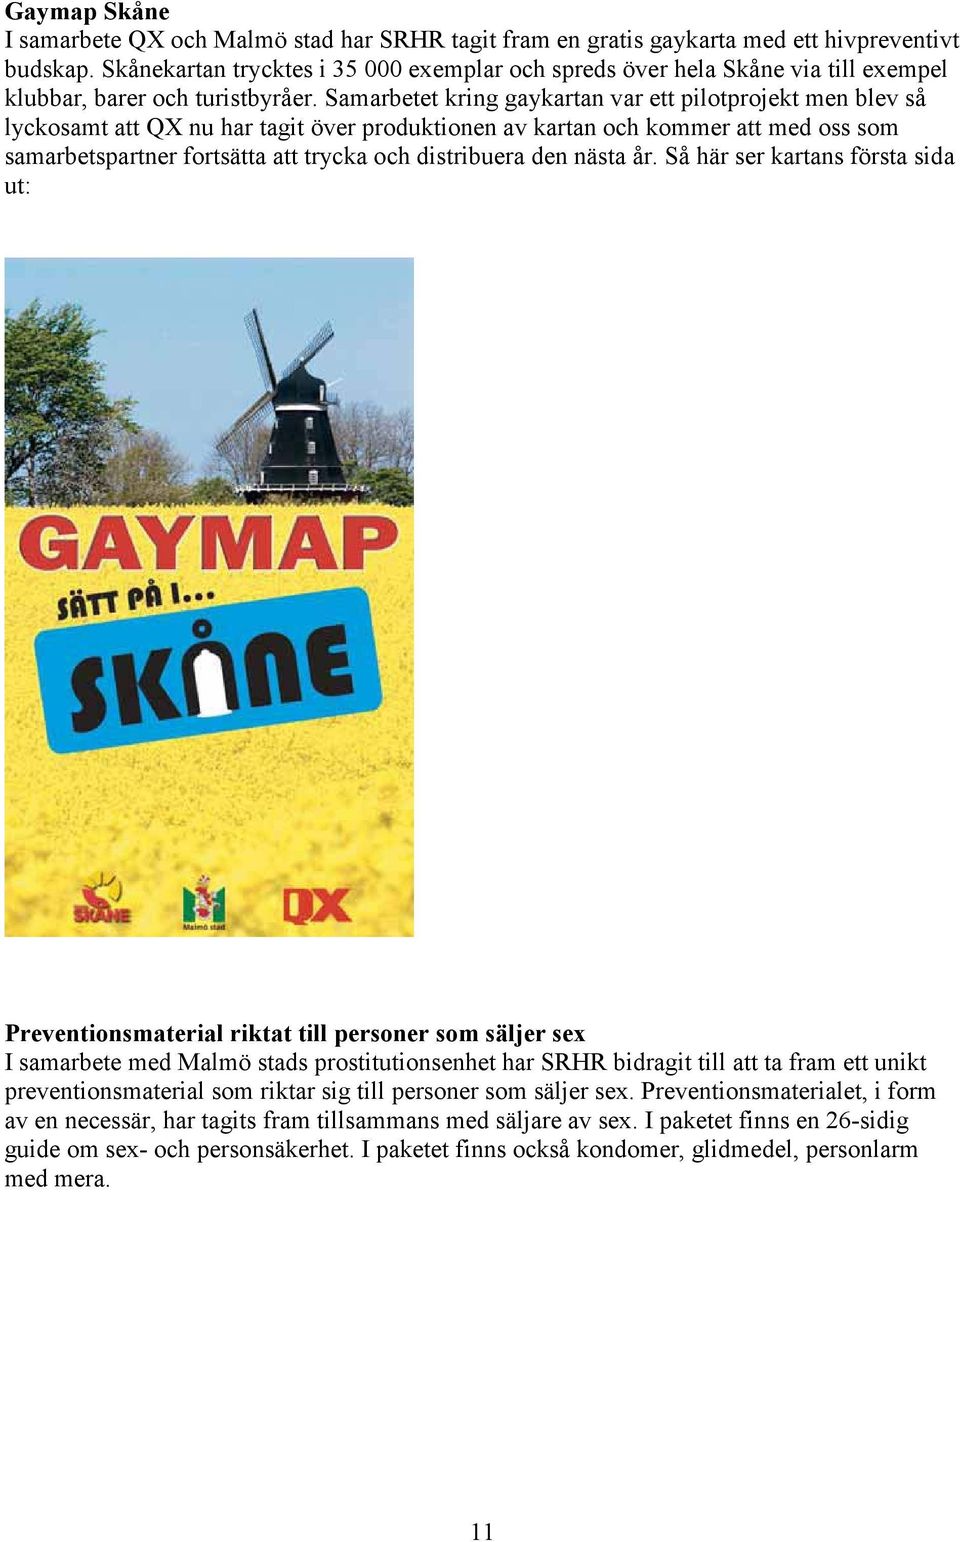 Samarbetet kring gaykartan var ett pilotprojekt men blev så lyckosamt att QX nu har tagit över produktionen av kartan och kommer att med oss som samarbetspartner fortsätta att trycka och distribuera